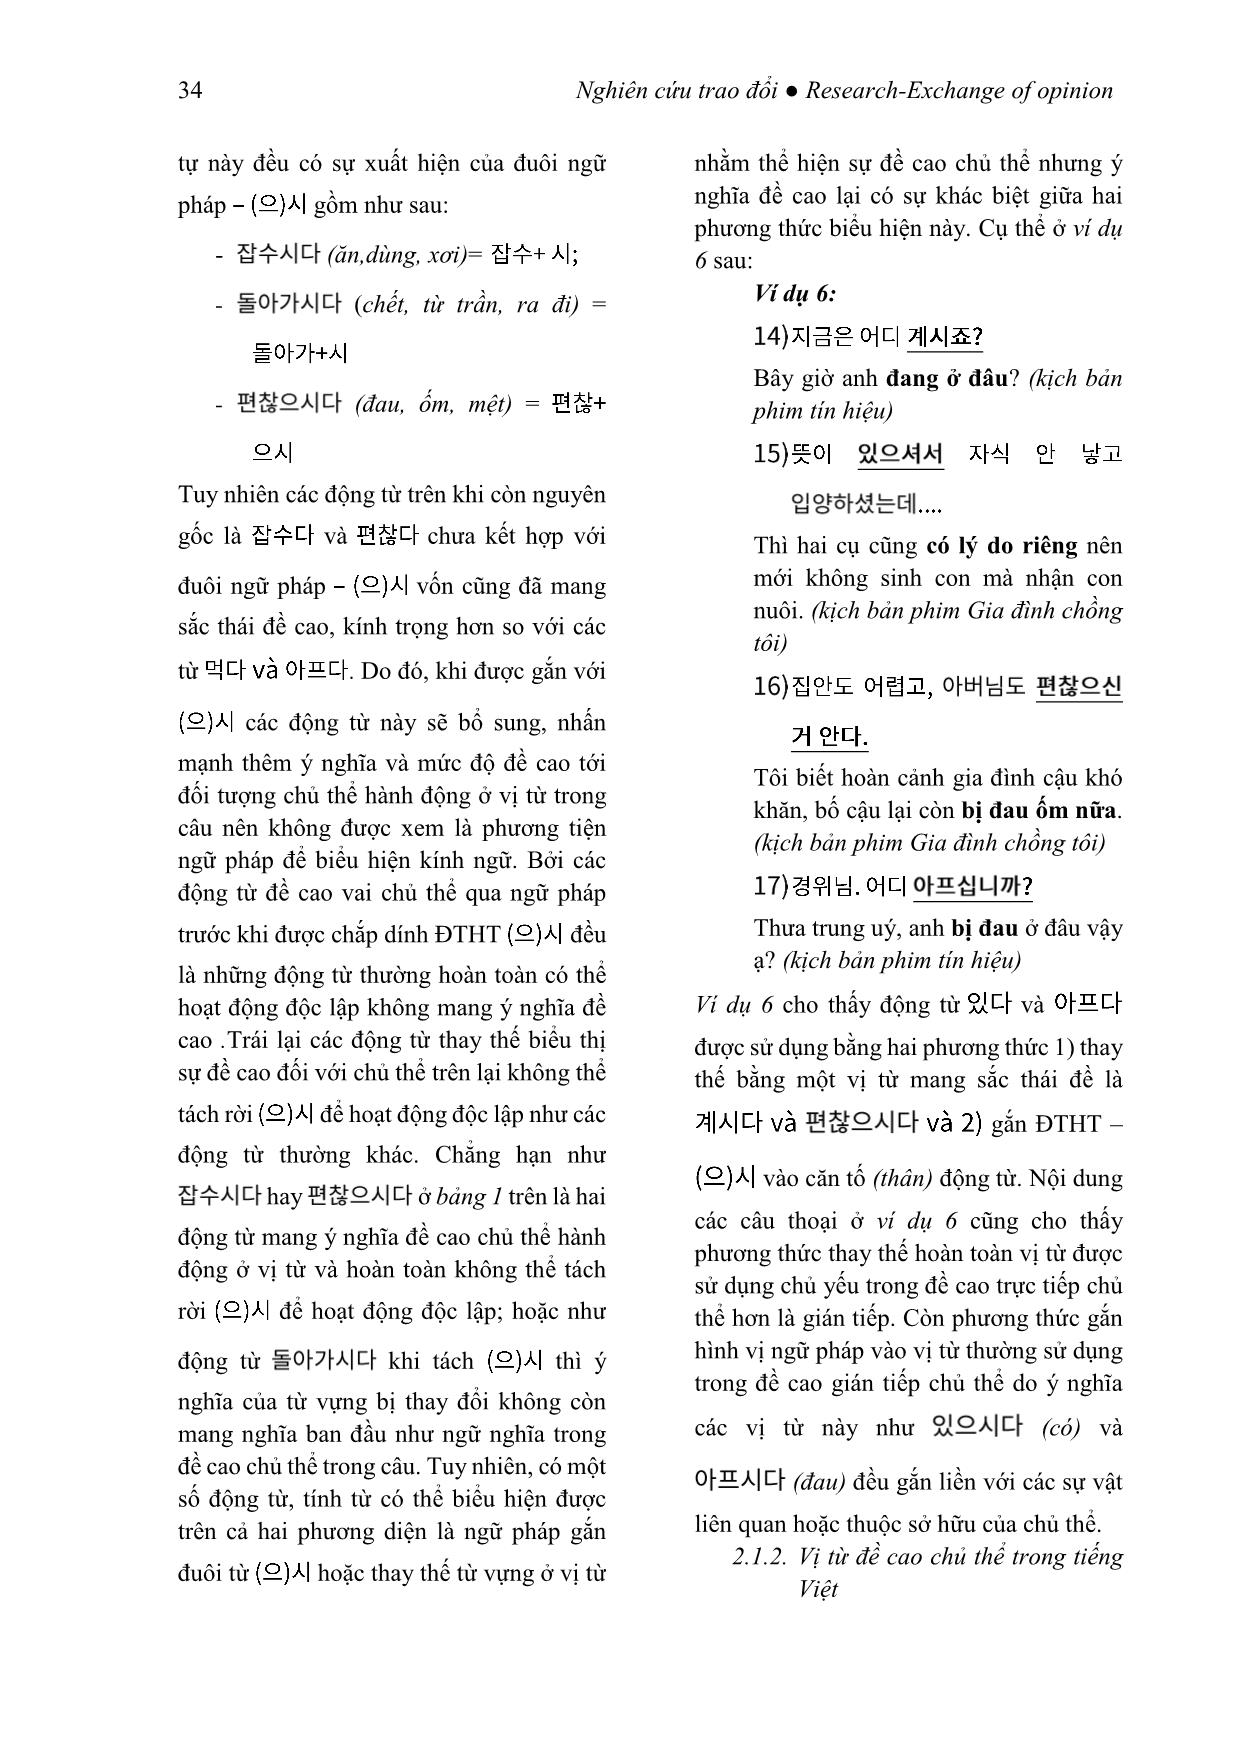 Kính ngữ tiếng Hàn qua phương thức thay thế từ vựng (Xét trong mối tương quan với tiếng Việt) trang 8